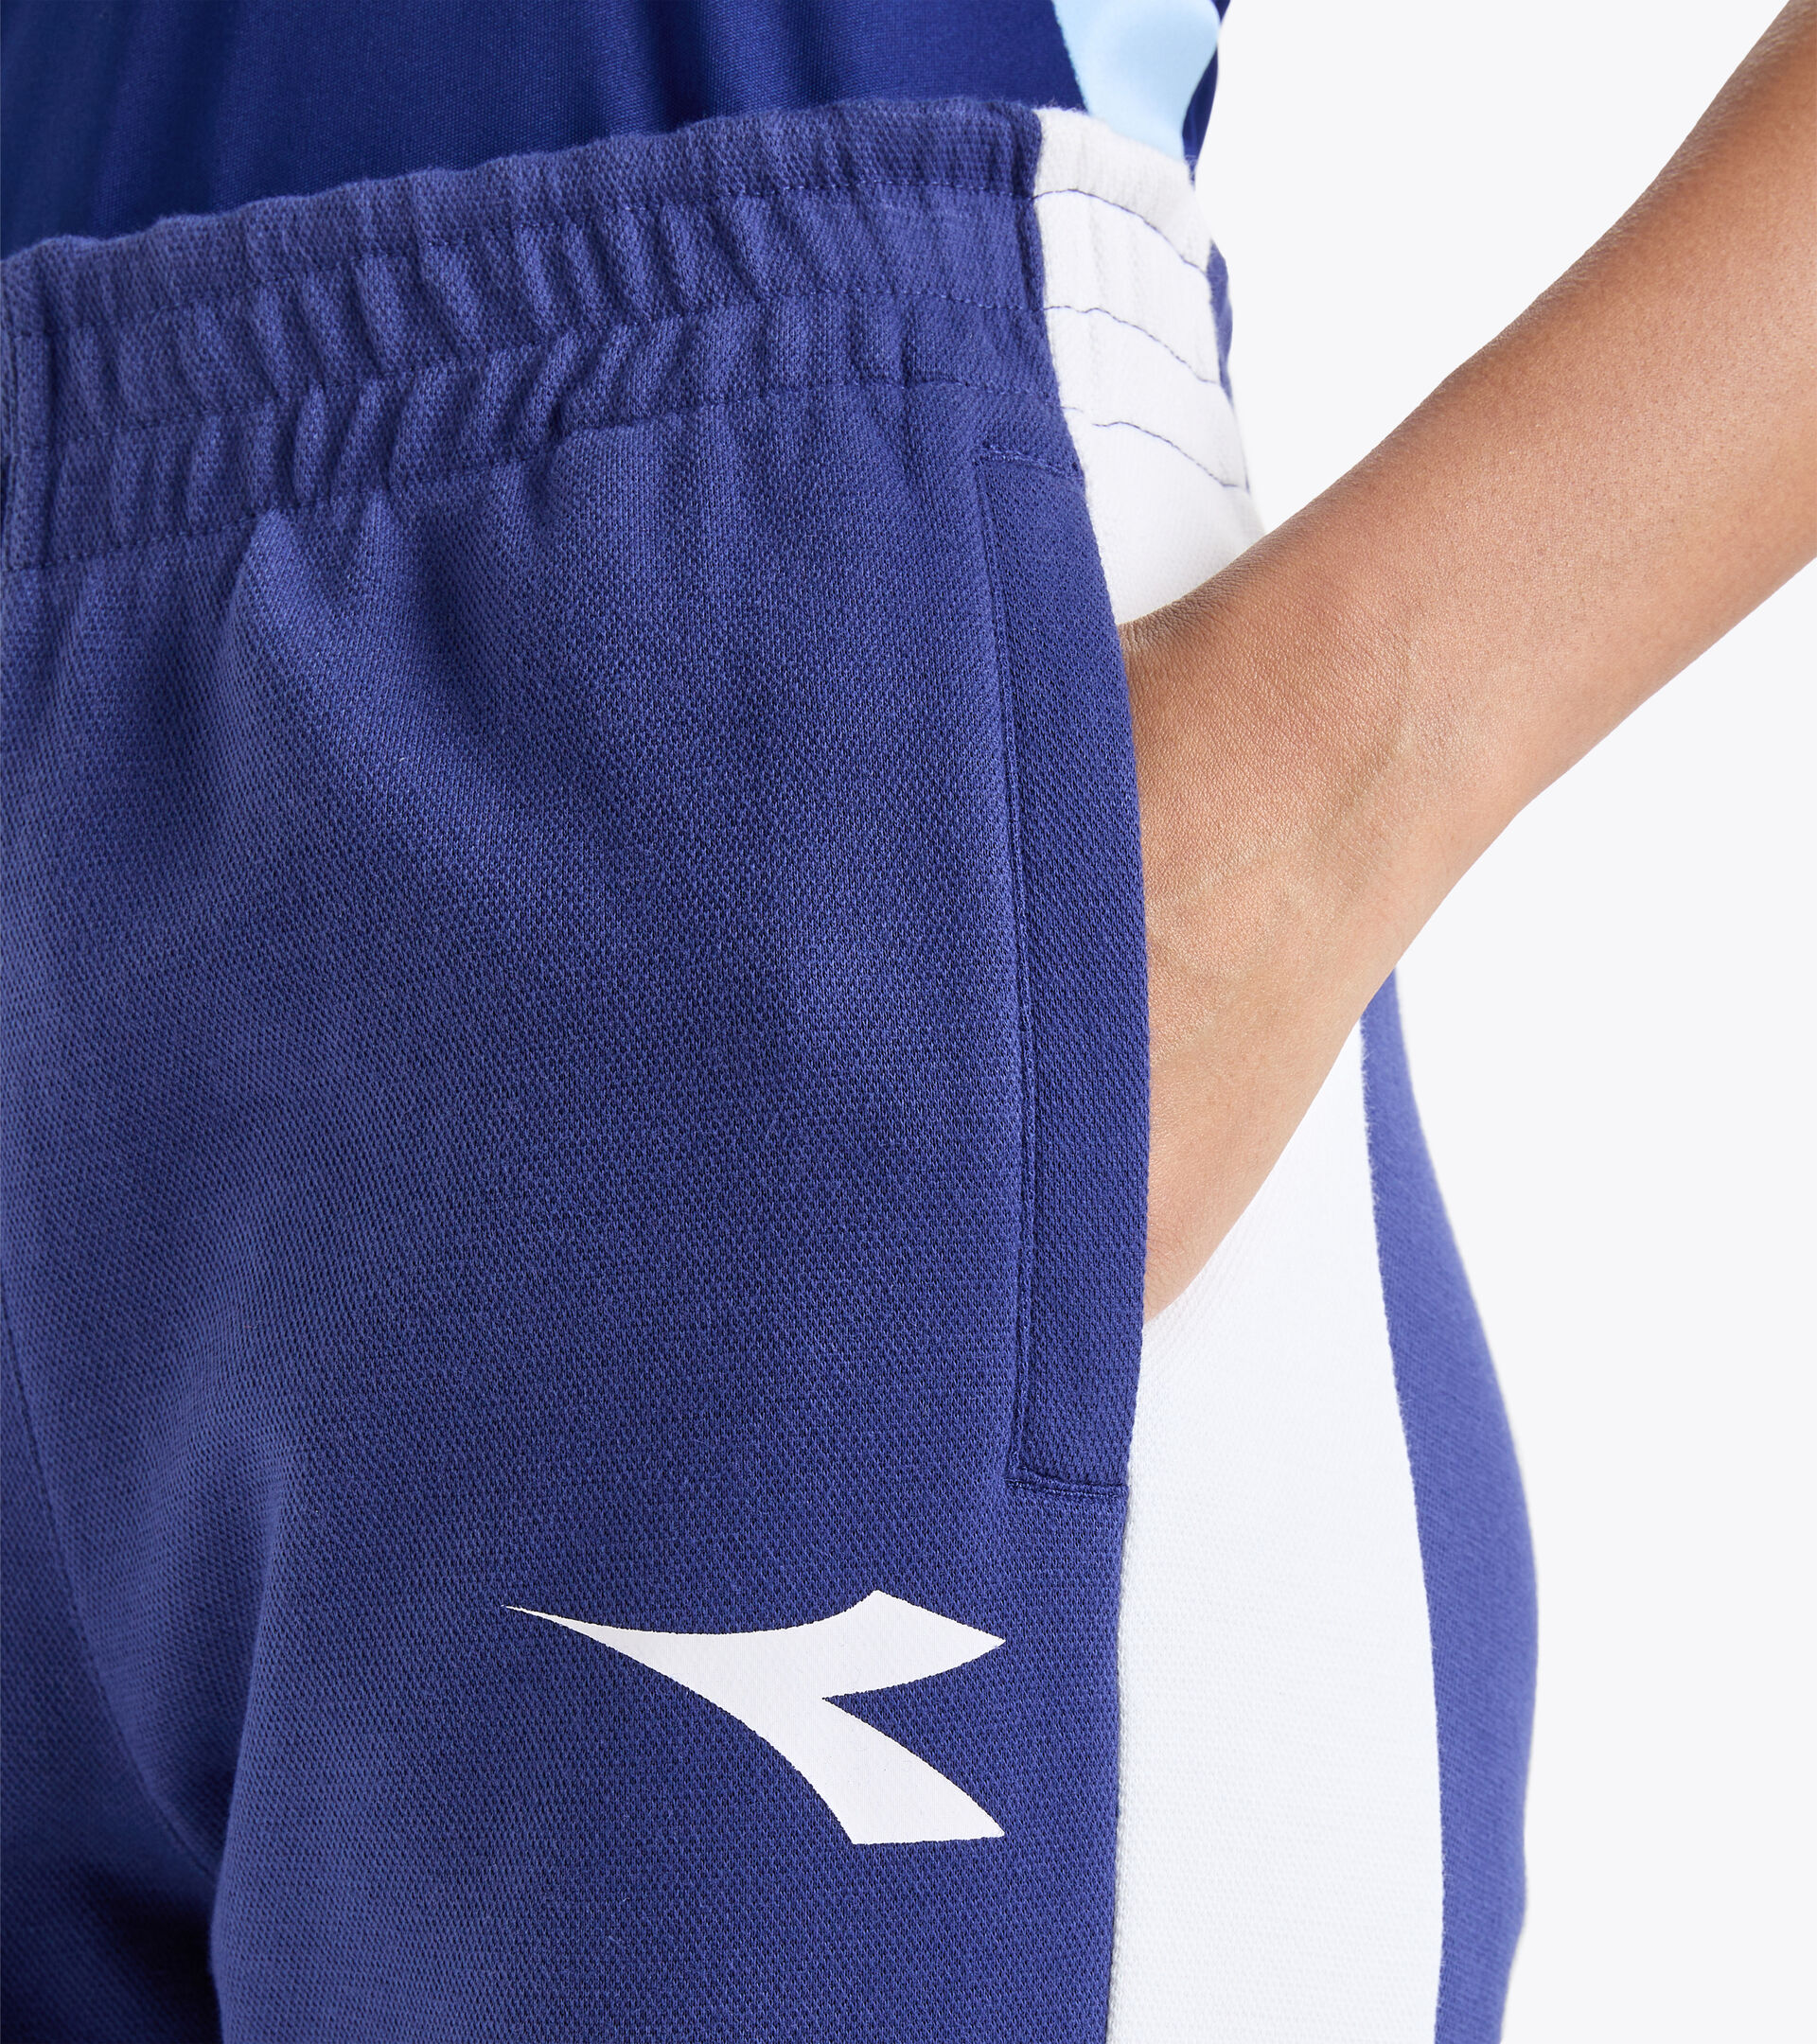 L. PANTS Tennis pants - Women - Diadora Online Store CA